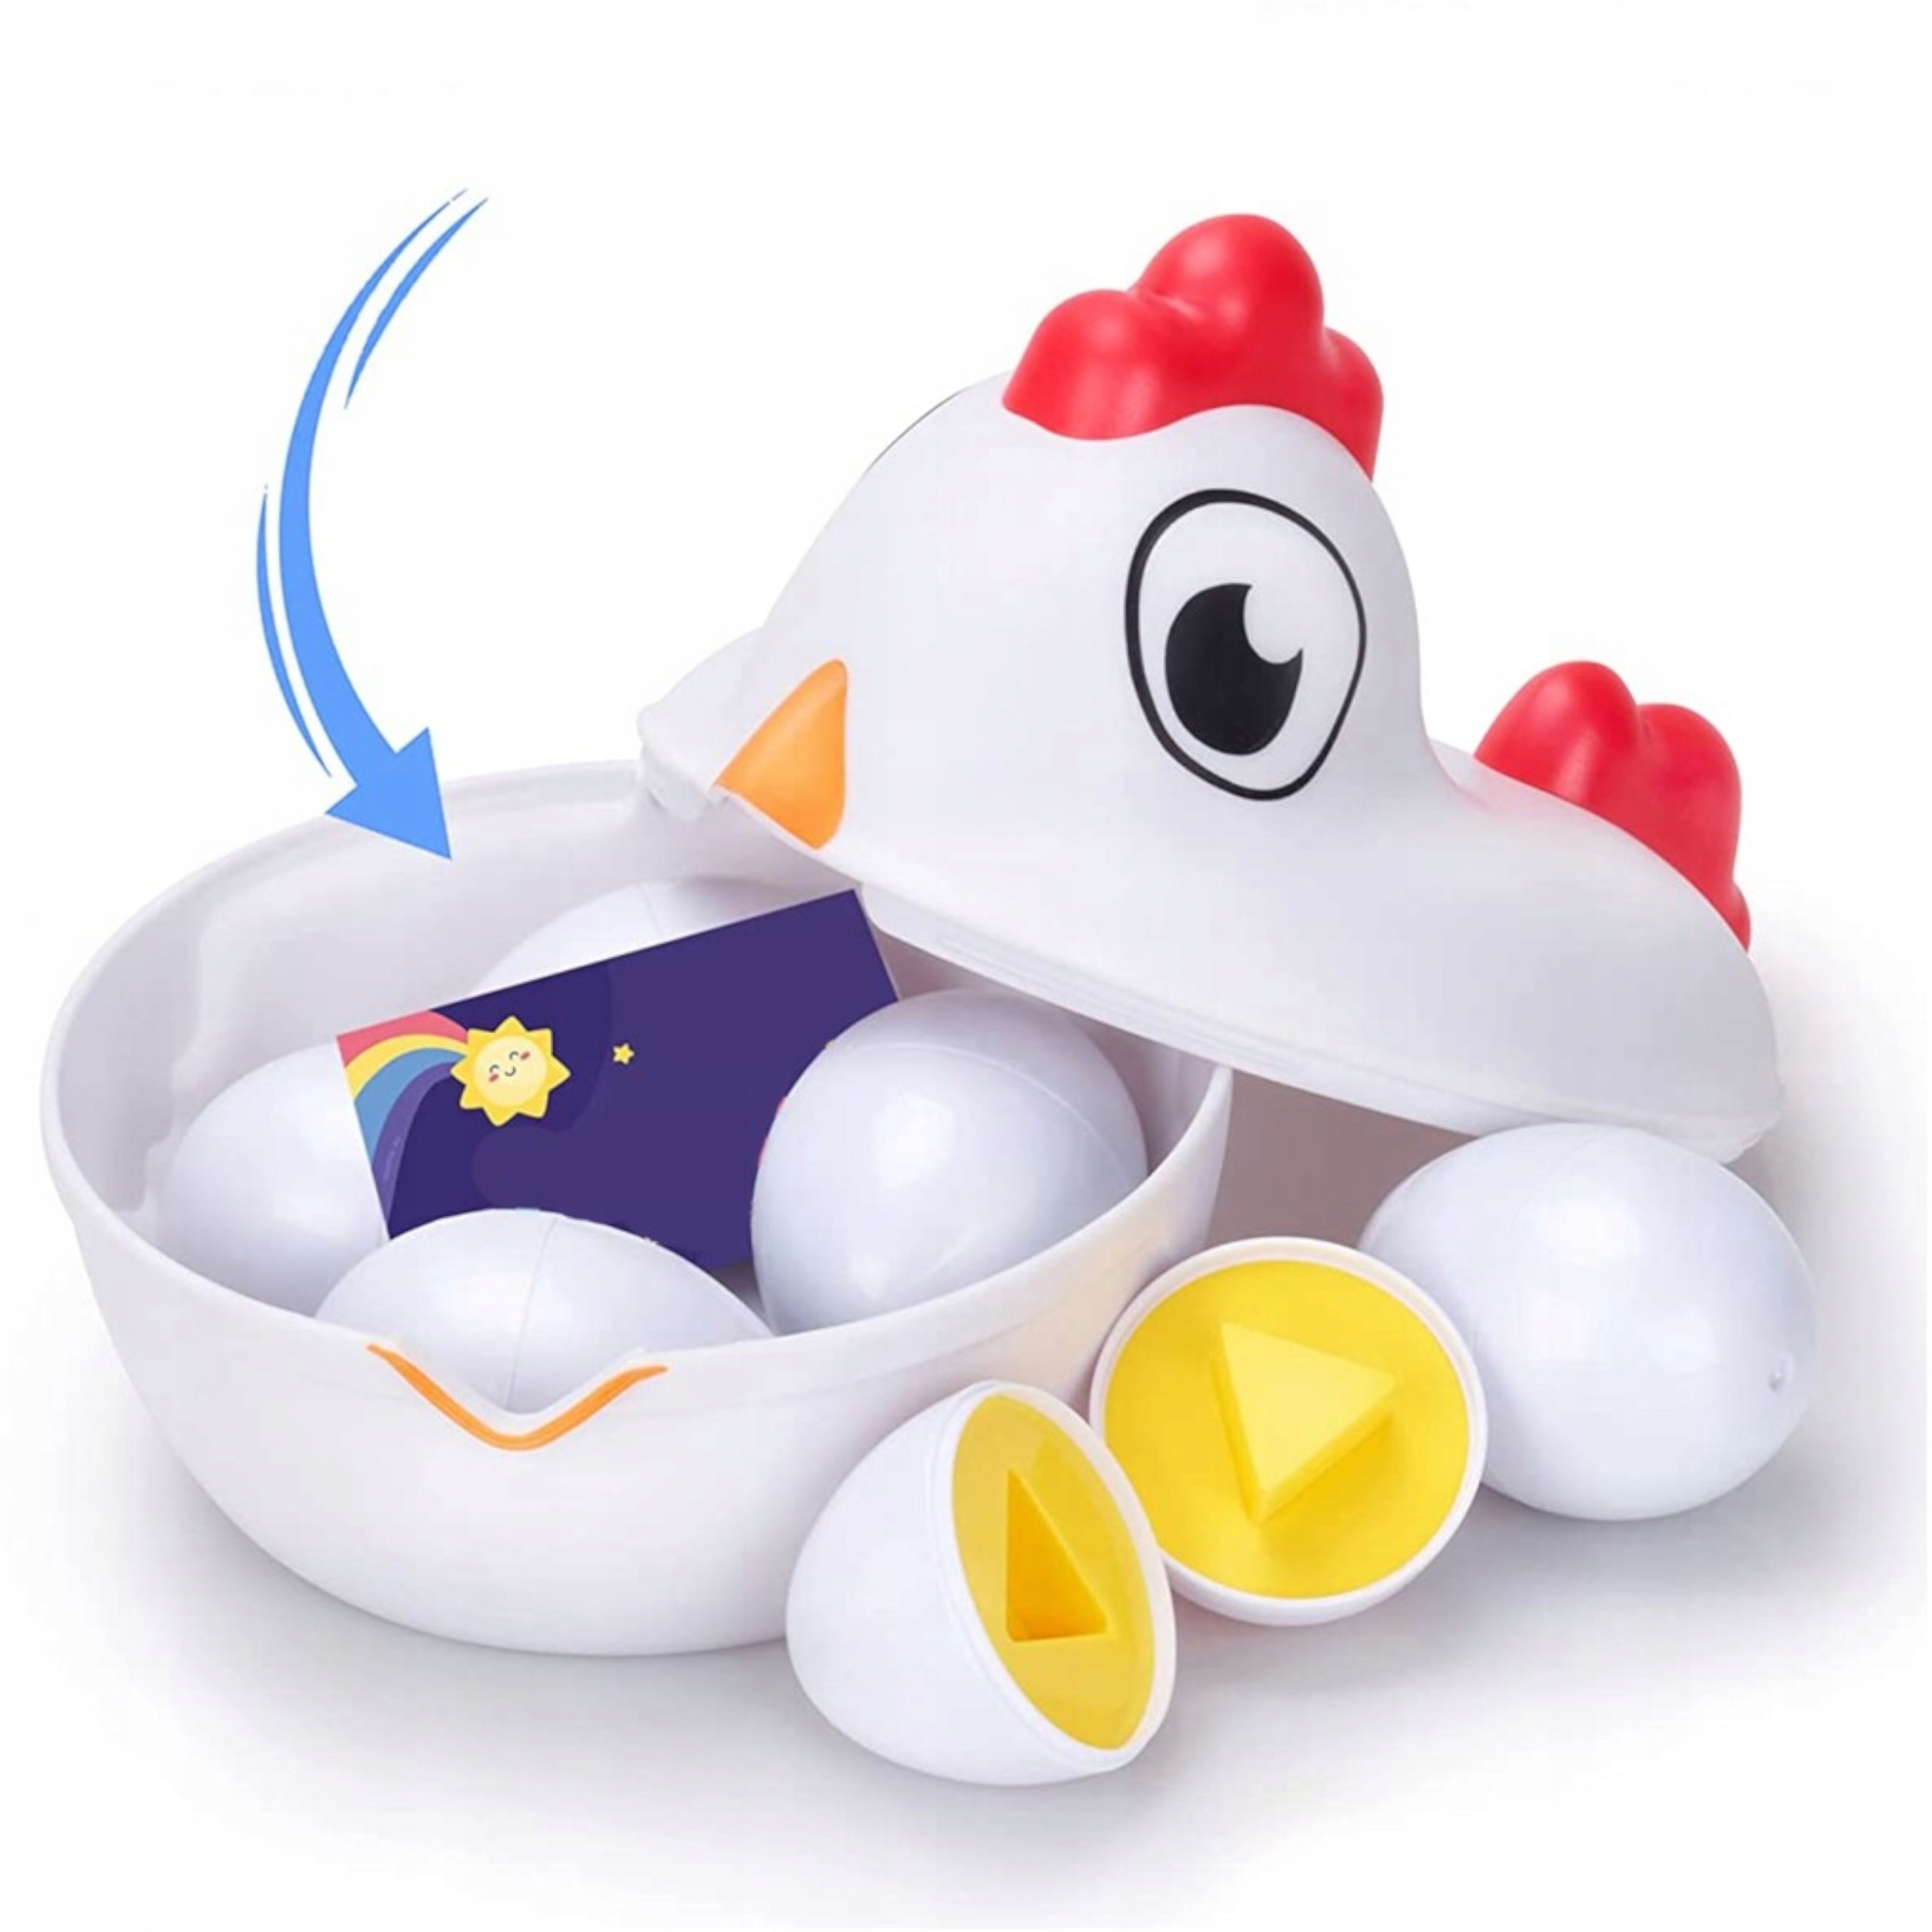 Układanka sorter jajka Montessori kolory DF18 Stan opakowania oryginalne